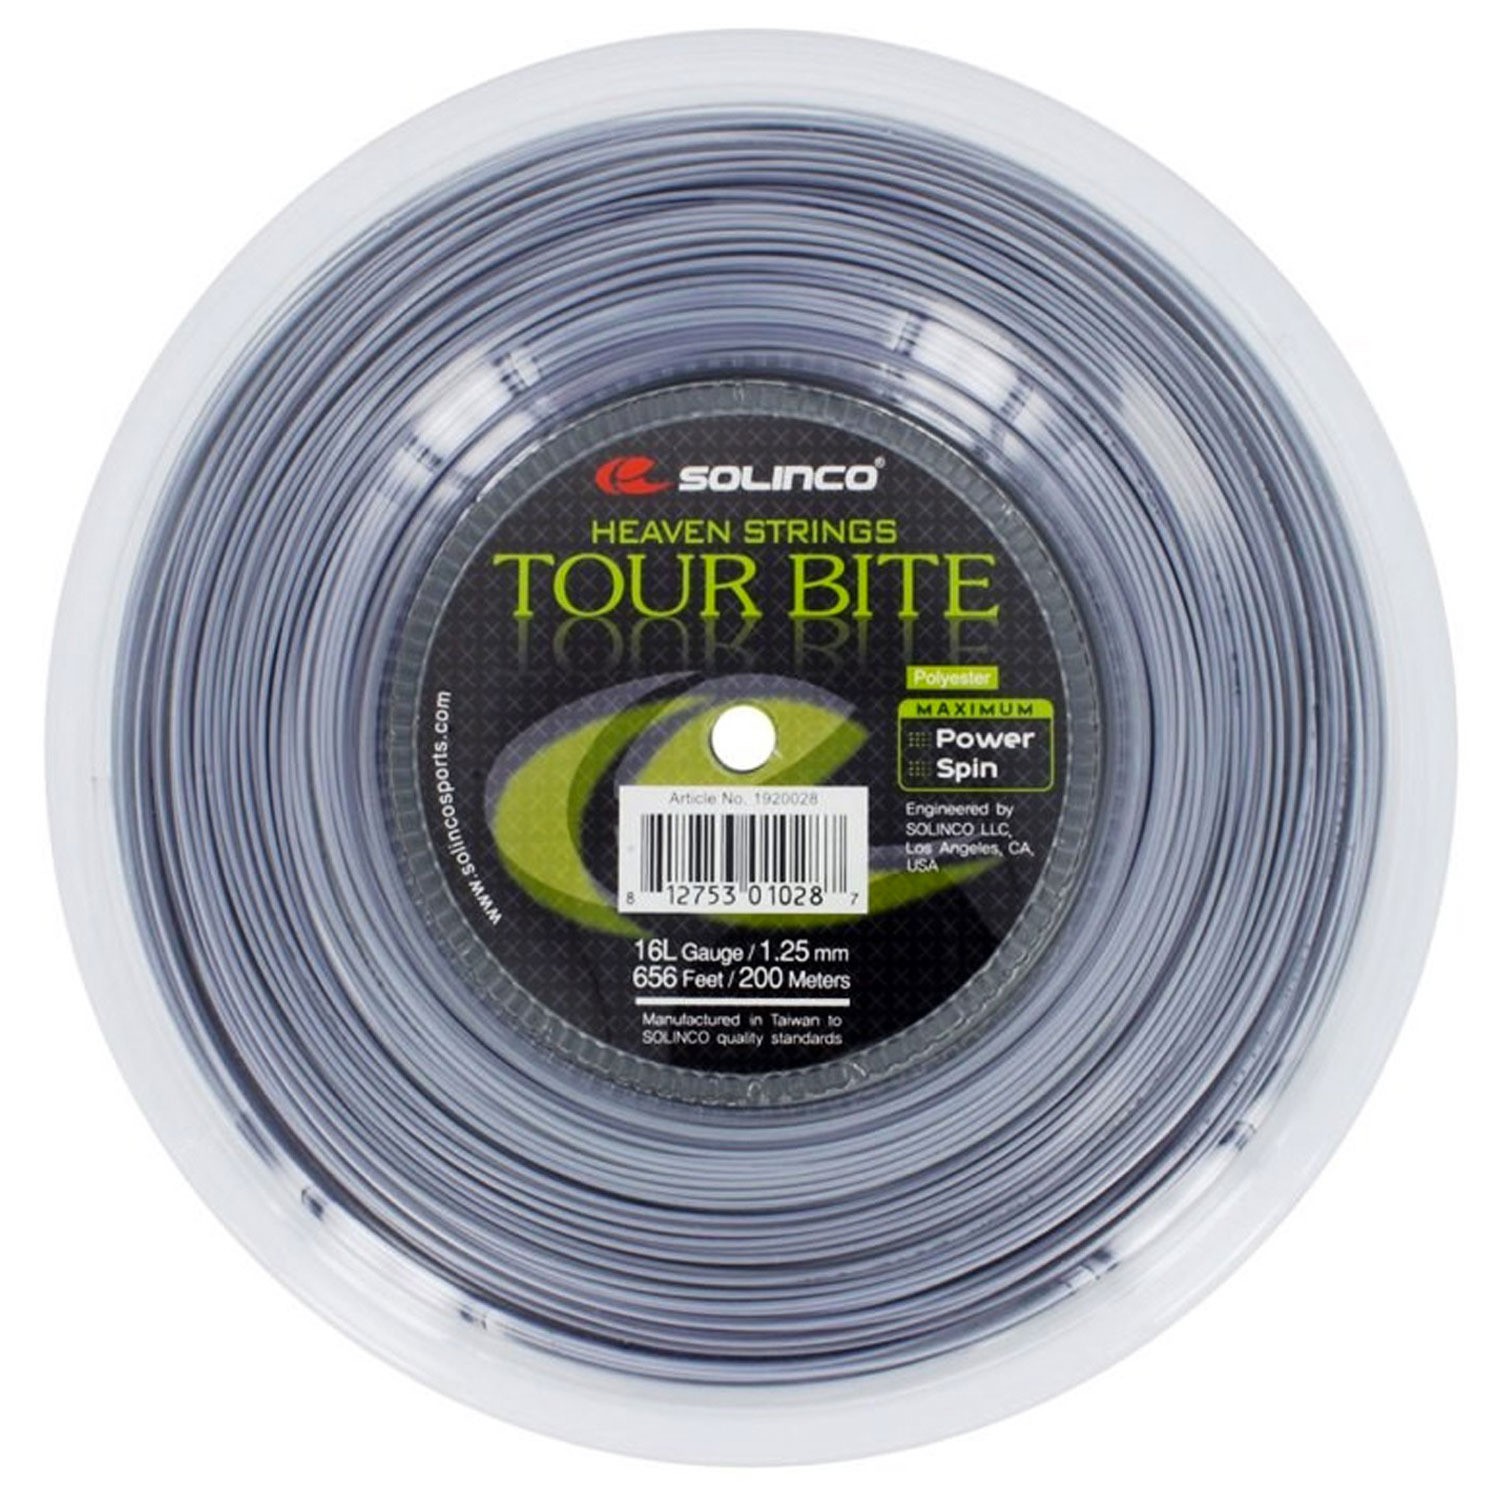 Теннисные струны Solinco Tour Bite 200m 1,3